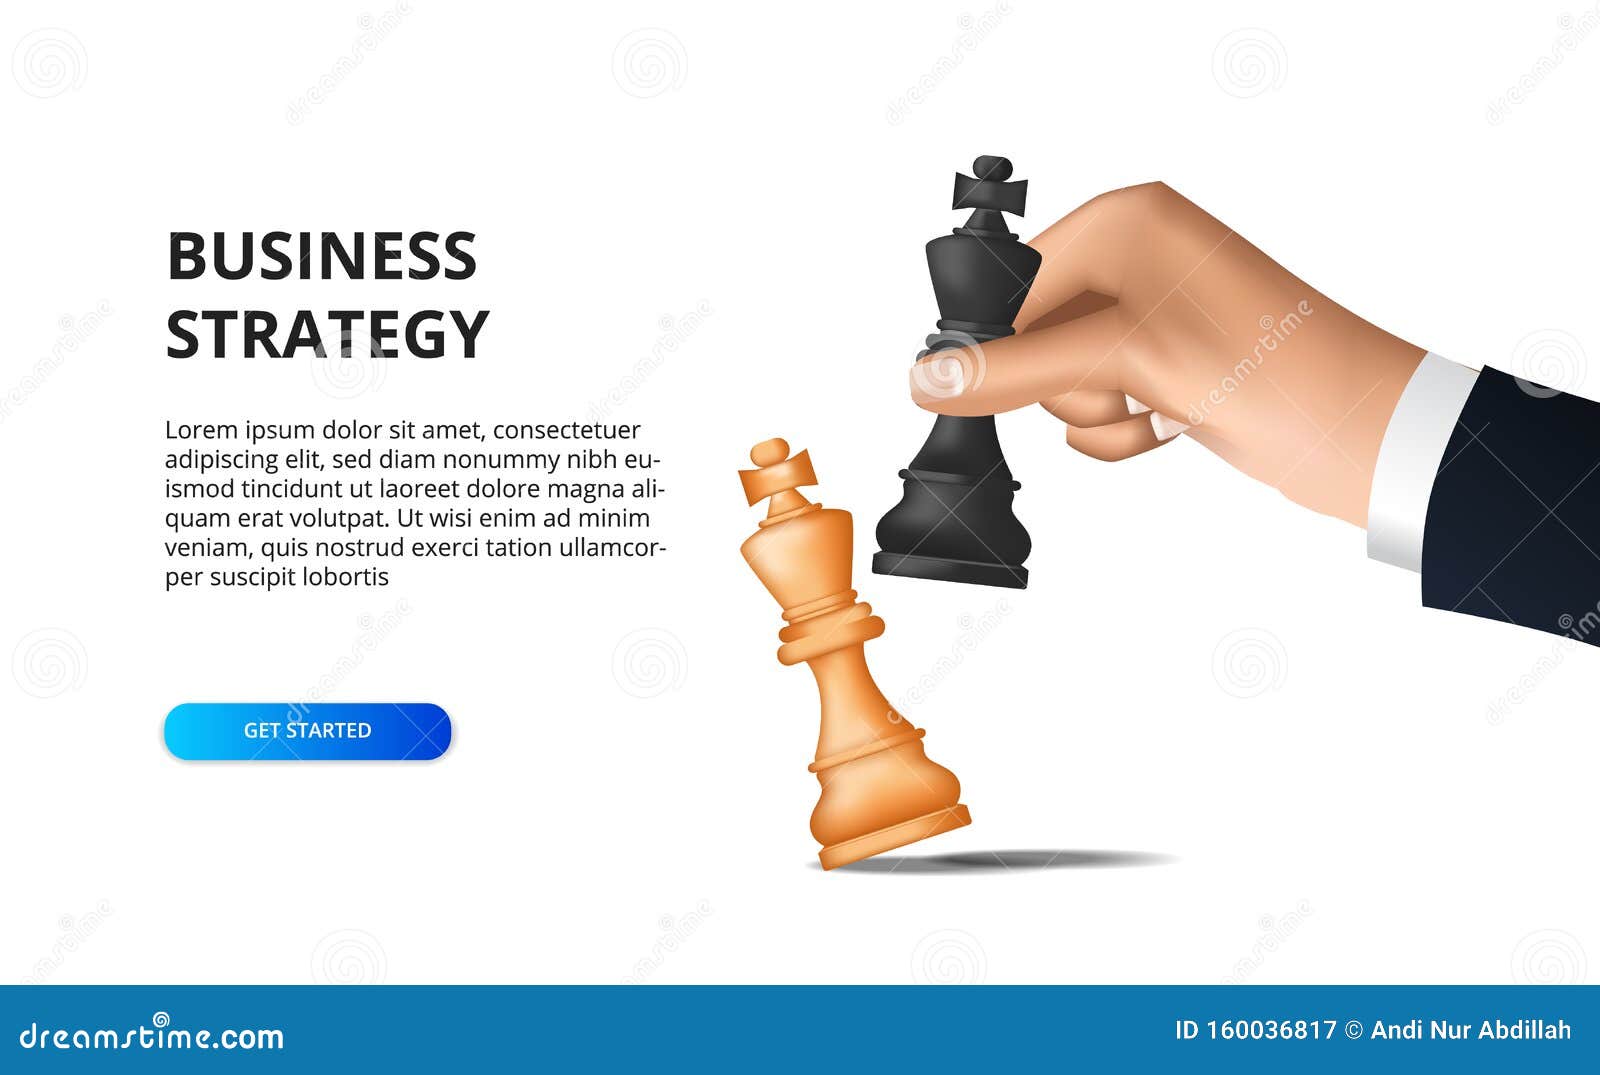 Estratégia Empresarial Do Checkmate Da Xadrez Imagem de Stock